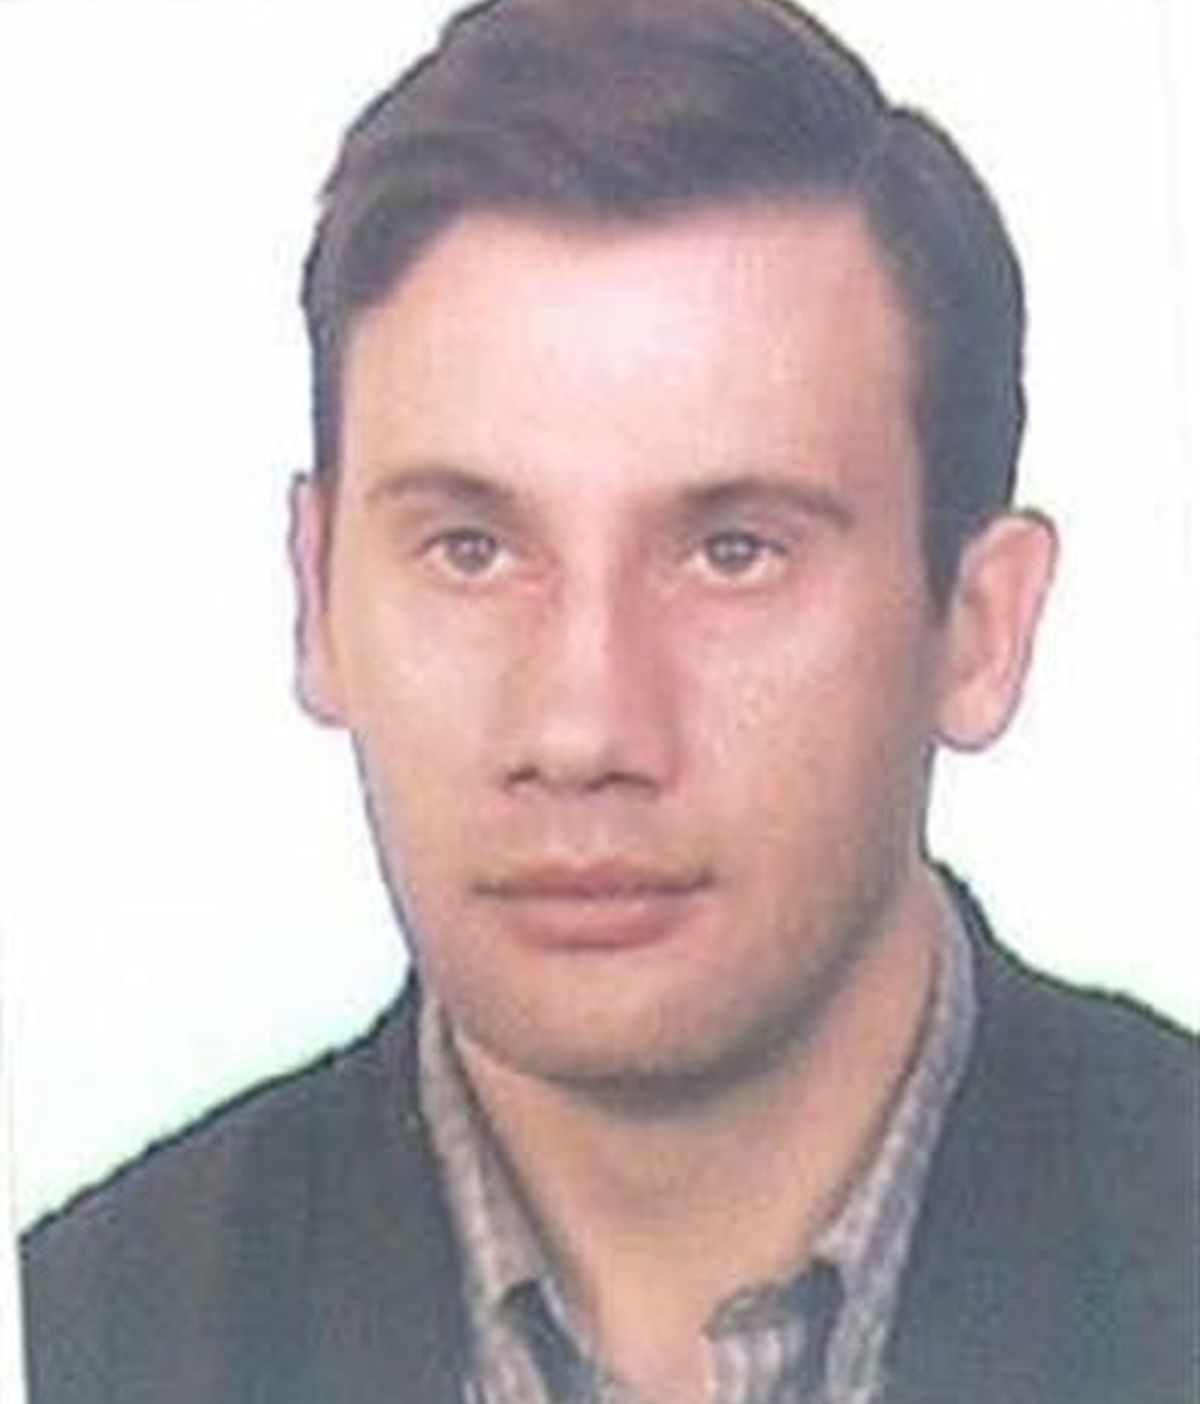 La Policía busca a un hombre de 40 años que desapareció el viernes en Lugo. Foto: Policía Nacional